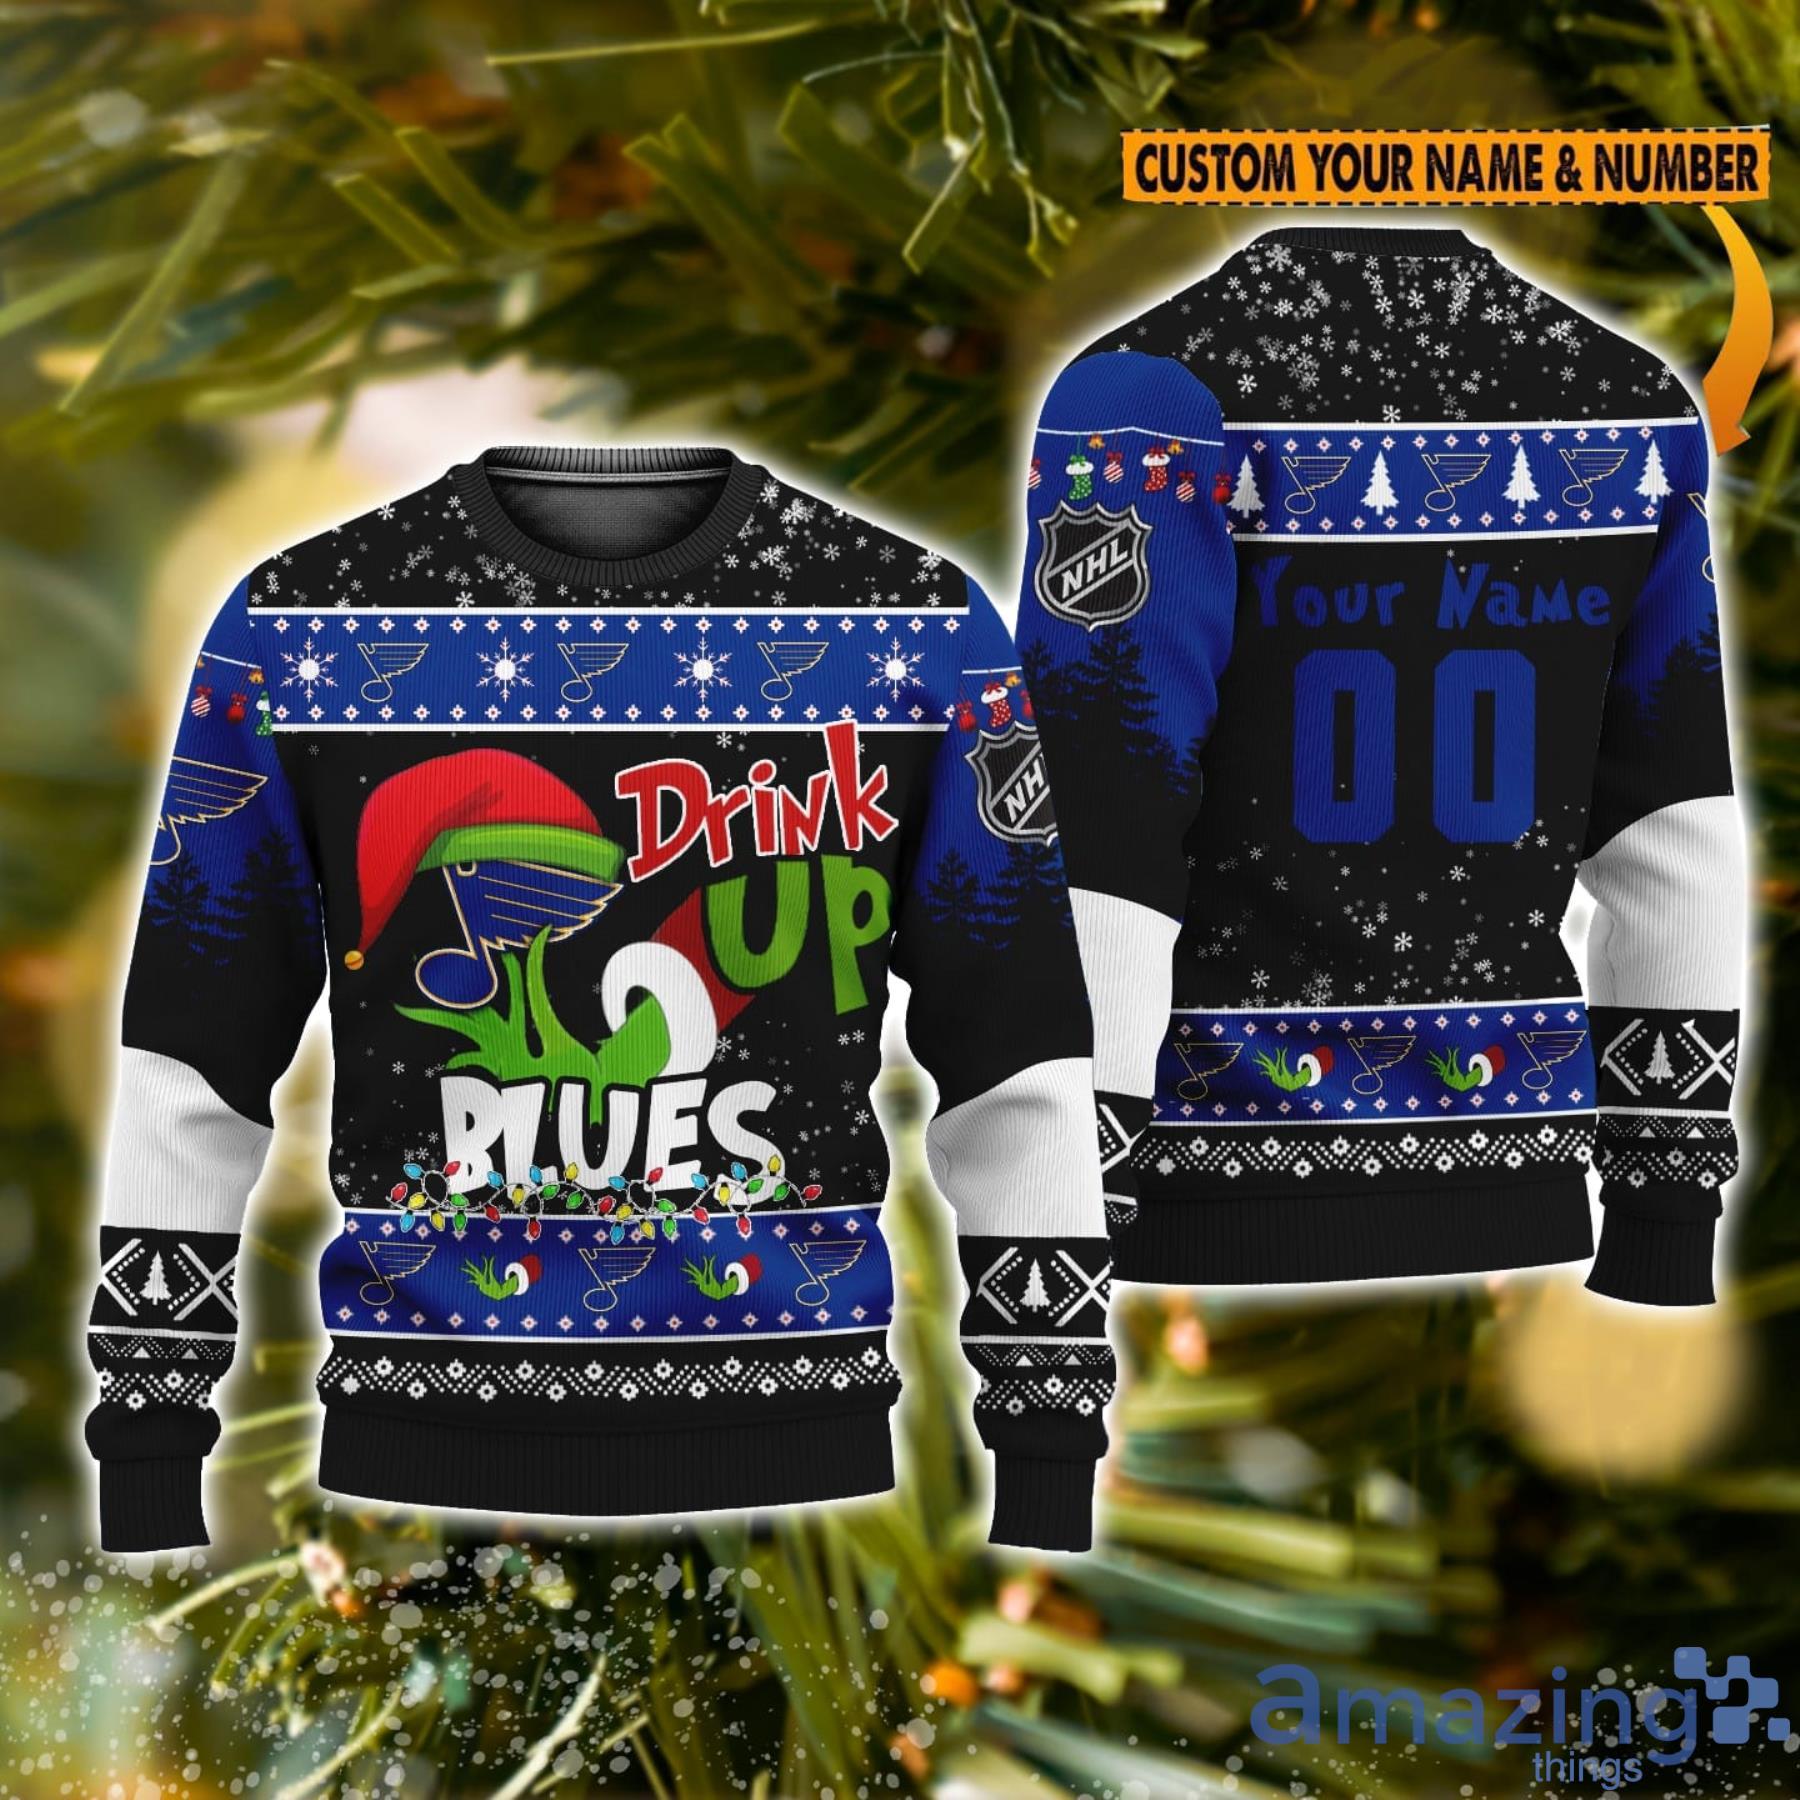 LIMITED] St. Louis Blues NHL Hawaiian Shirt And Shorts, New